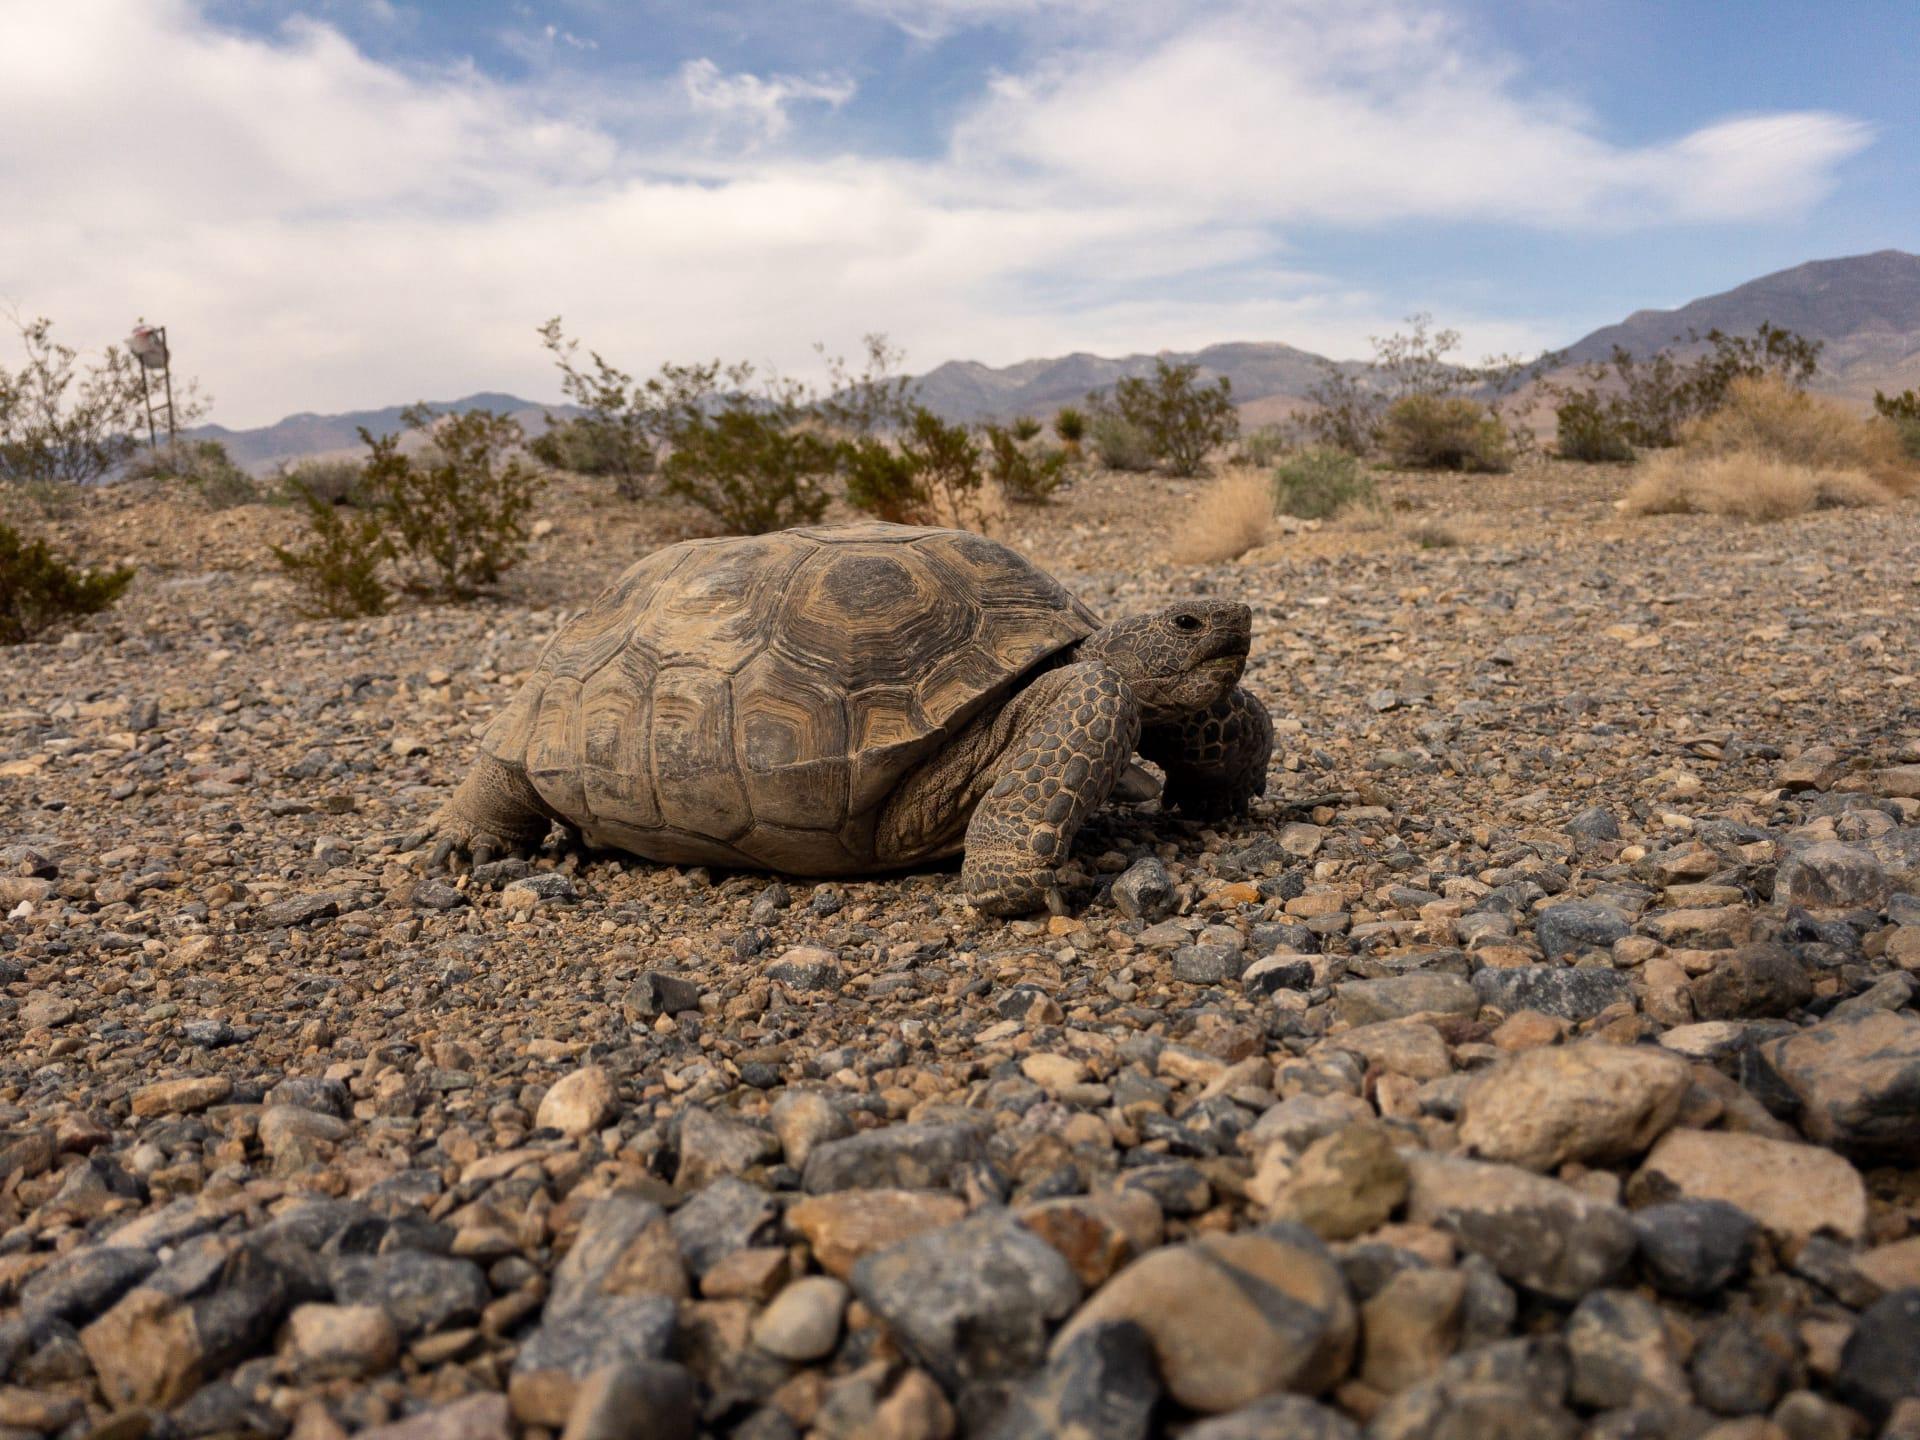 Desert tortoise pictures